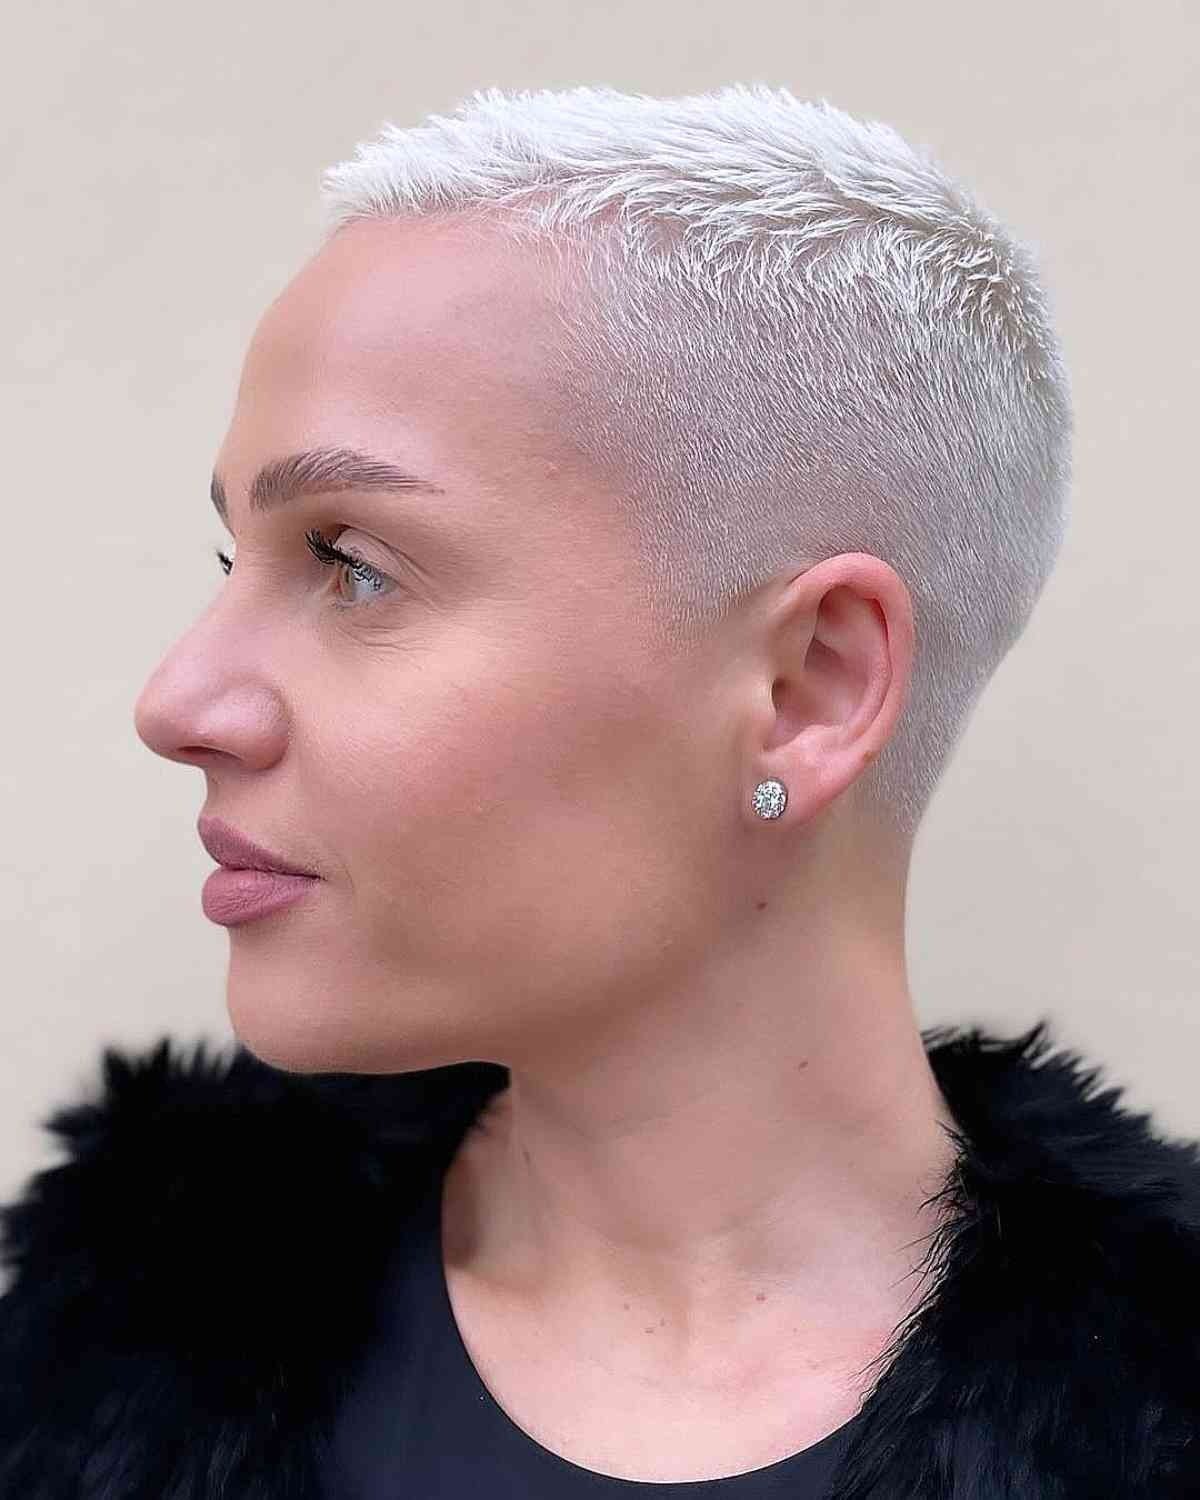 Close-up of a sleek platinum blonde buzz cut gender neutral hair